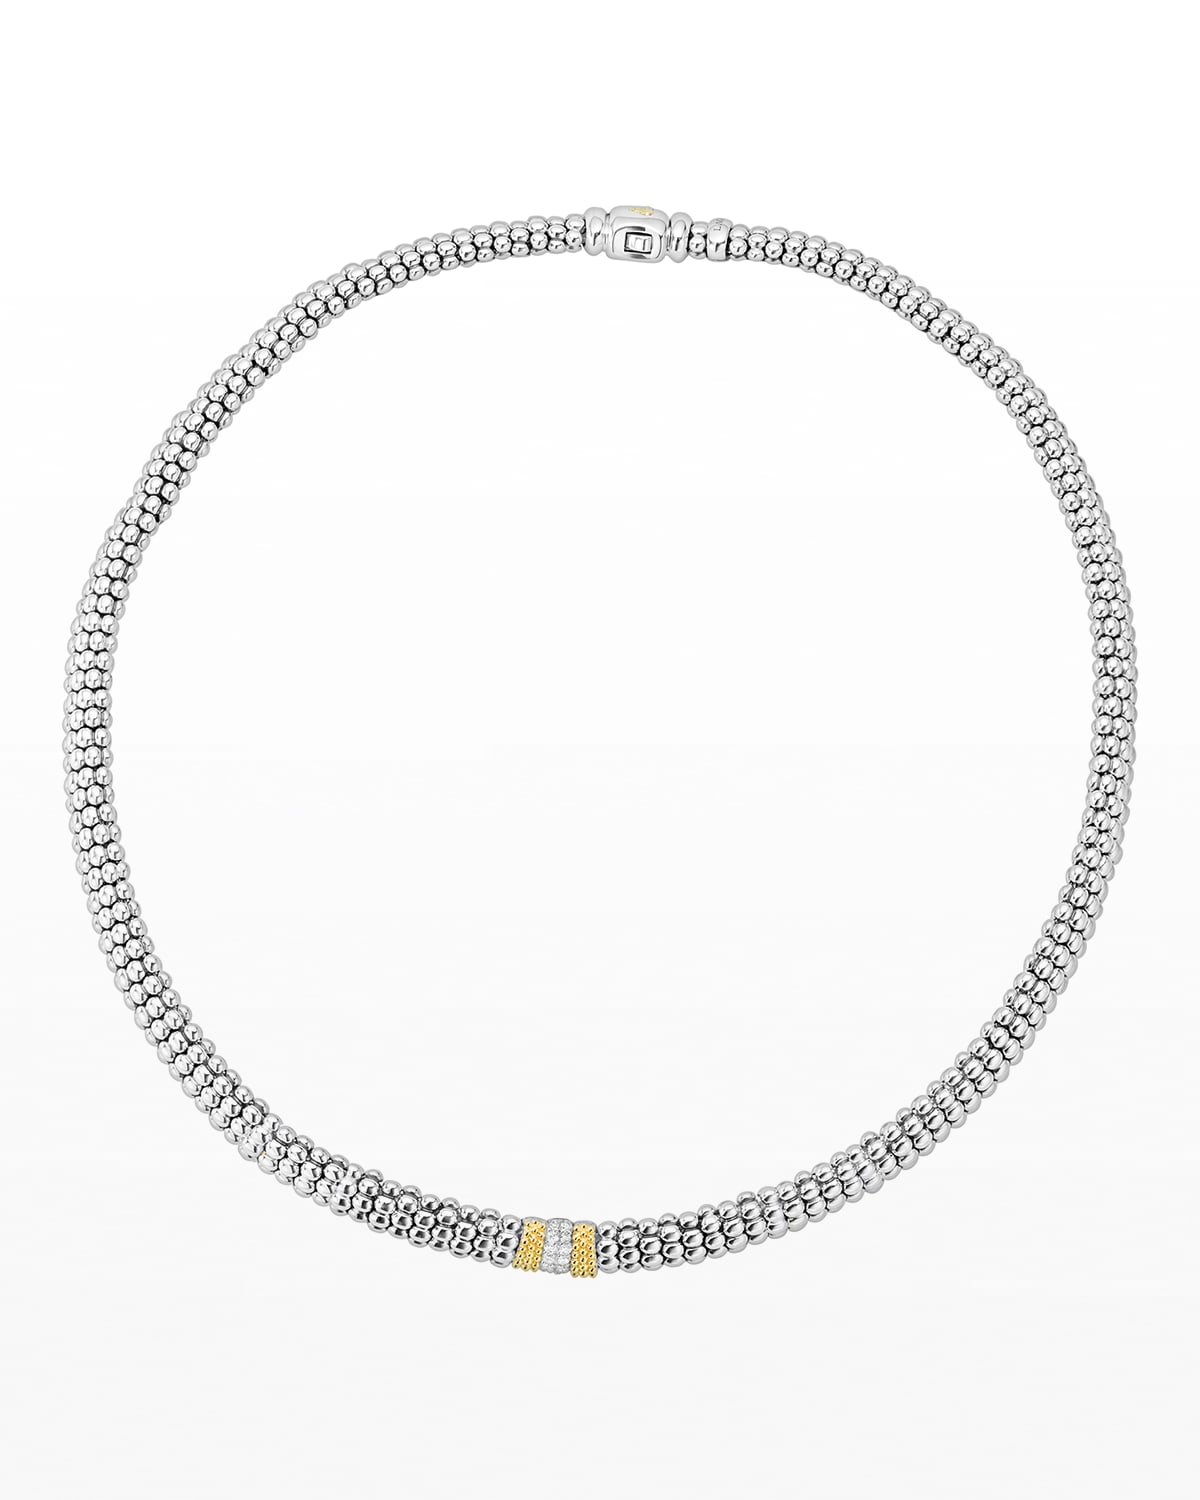 LAGOS Caviar Lux Diamond Station Necklace